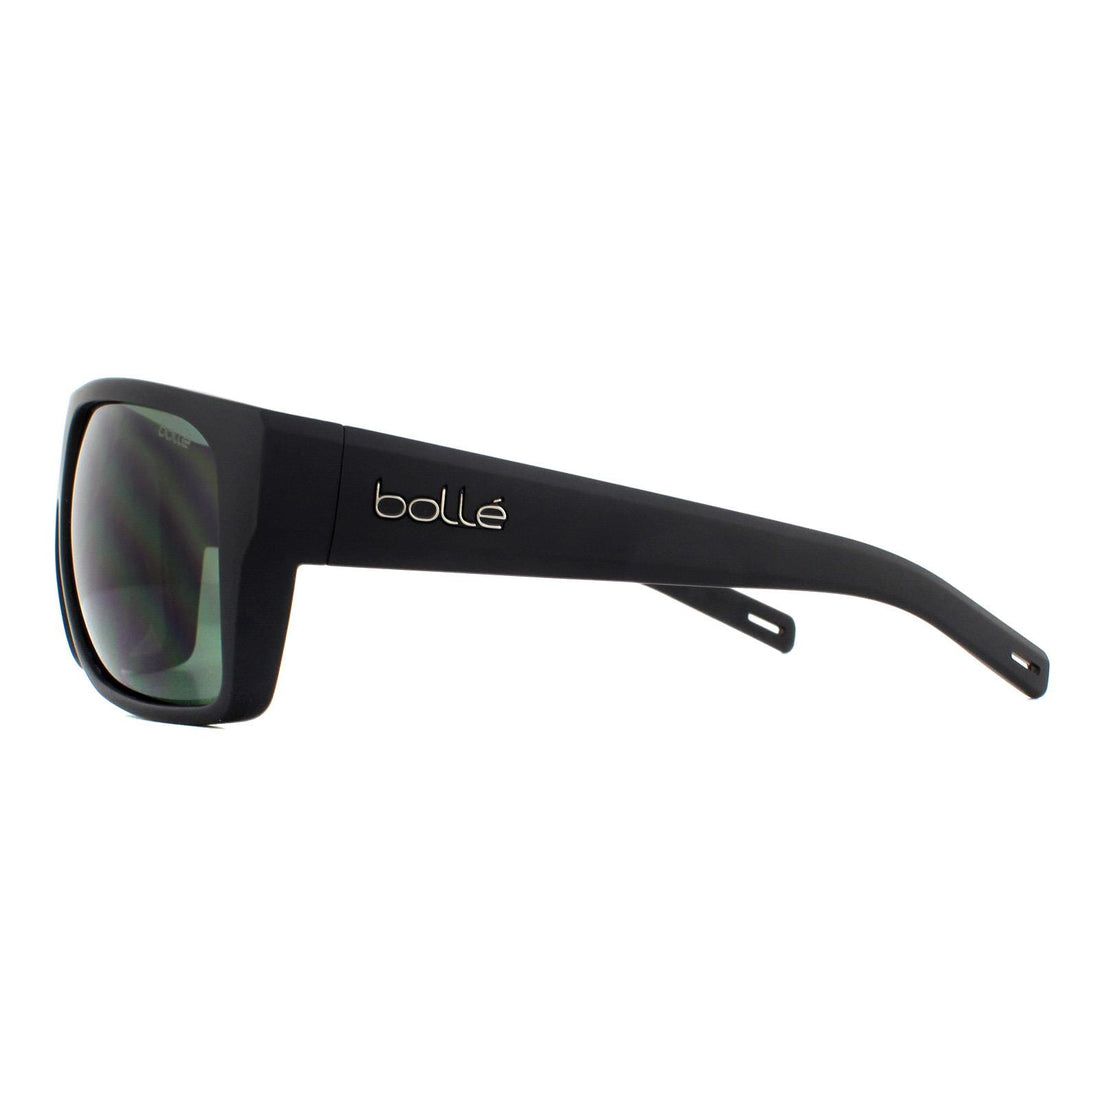 Bolle Sunglasses Falco 12643 Shiny Black Axis Grey Green